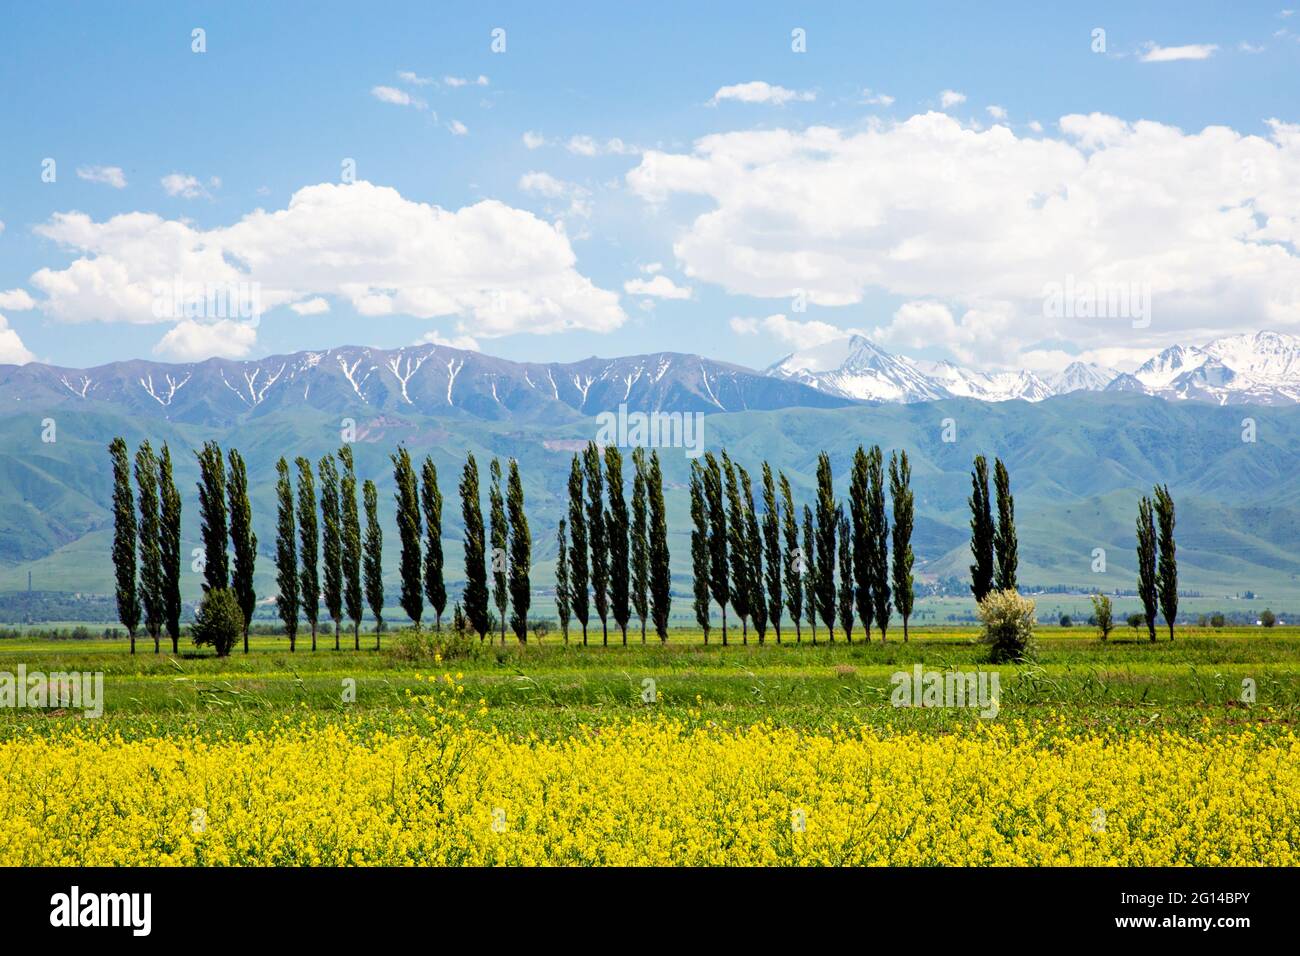 Rangée de peupliers avec fleurs printanières et montagnes enneigées dans la campagne, Kirghizistan Banque D'Images